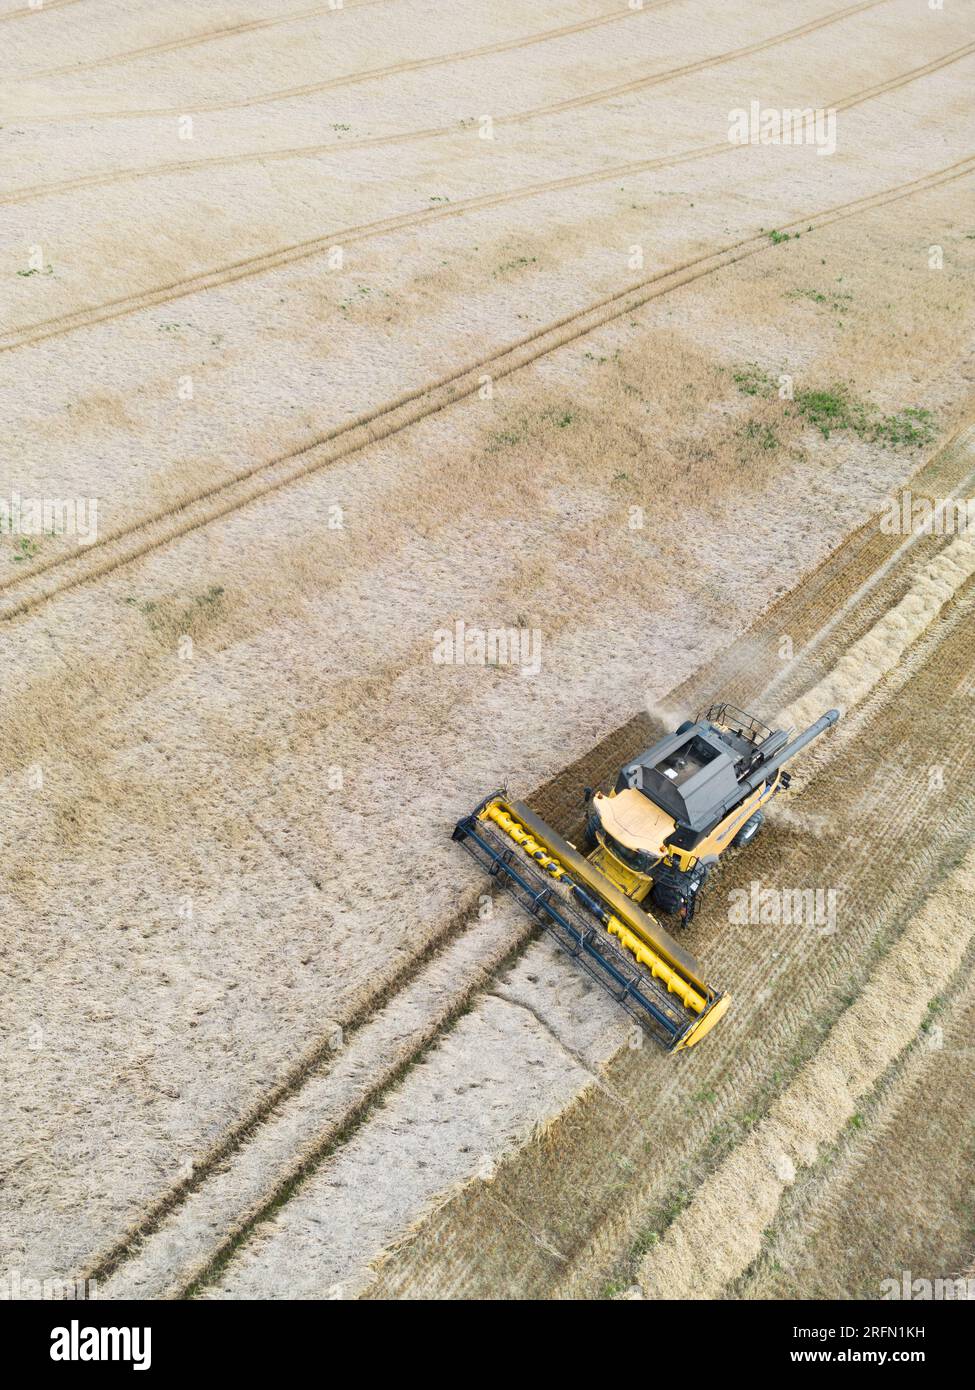 Fotografie aeree di una mietitrebbia e di trattori che raccolgono cereali e fieno in un'azienda agricola nel sud dello Shropshire. Foto Stock